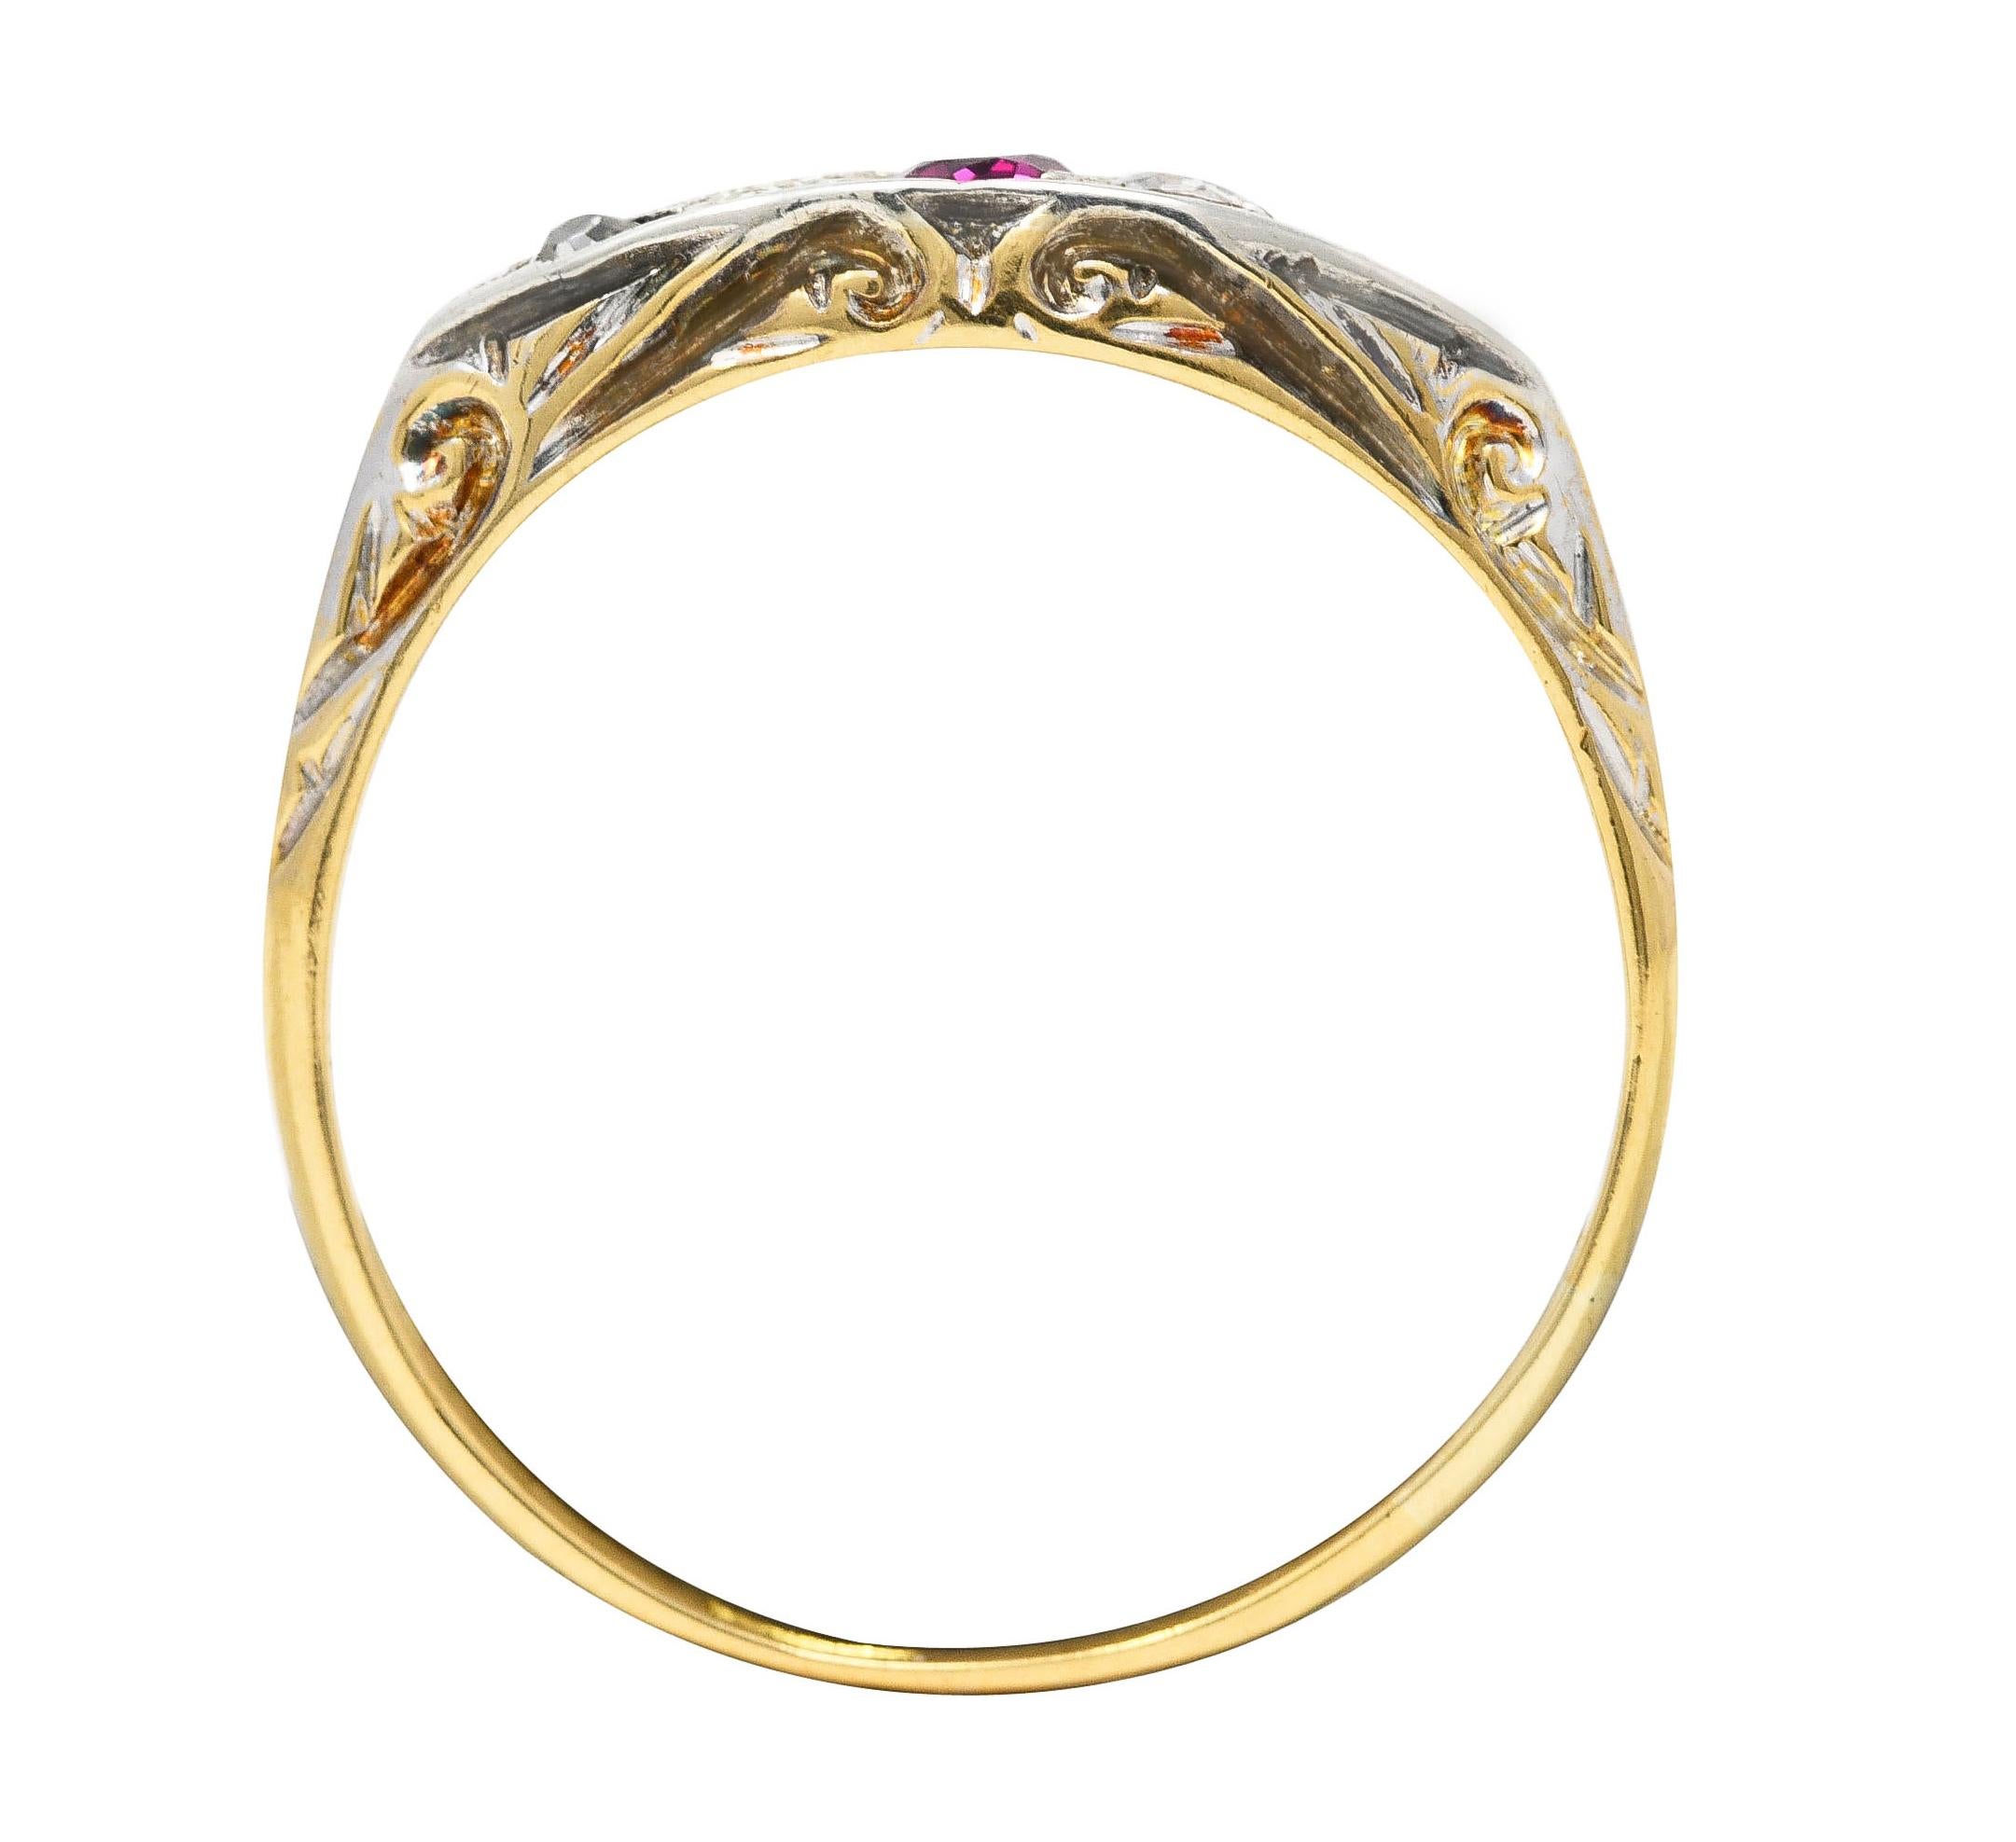 Edwardian Ruby Old European Cut Diamond Platinum-Topped 18 Karat Gold Band Ring 2